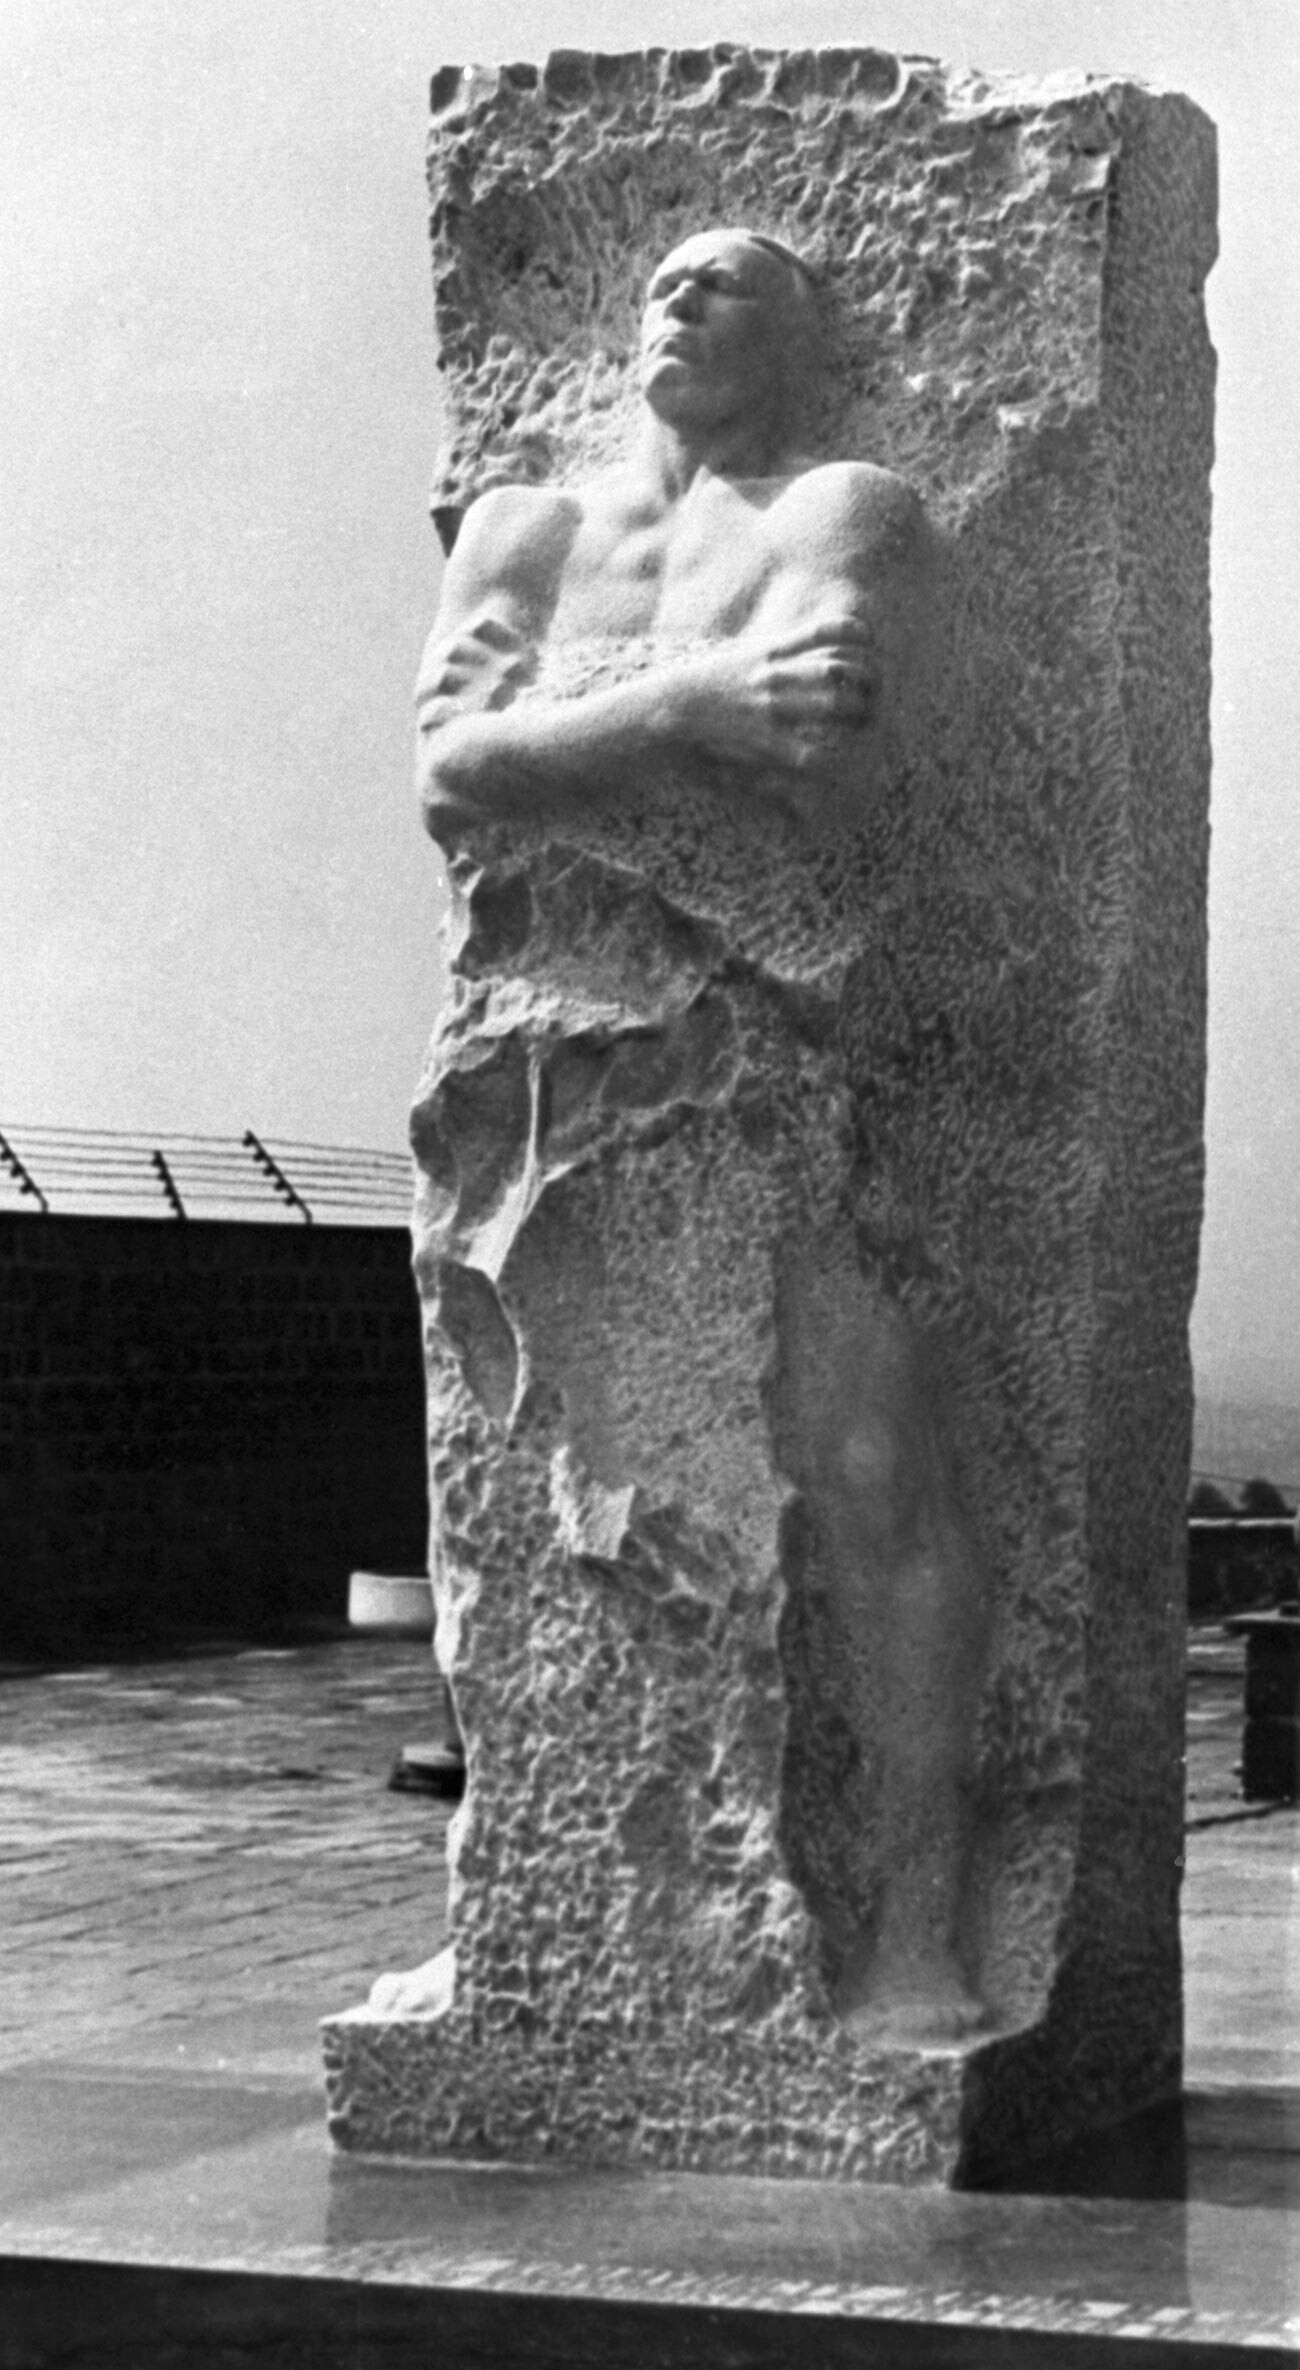 Споменик хероју Совјетског Савеза, брутално мученом од нациста, генерал-лајтнанту Дмитрију Карбишеву. Налази се на територији бившег нацистичког концентрационог логора Маутхаузен у Аустрији. Скулптор Владимир Цигал.